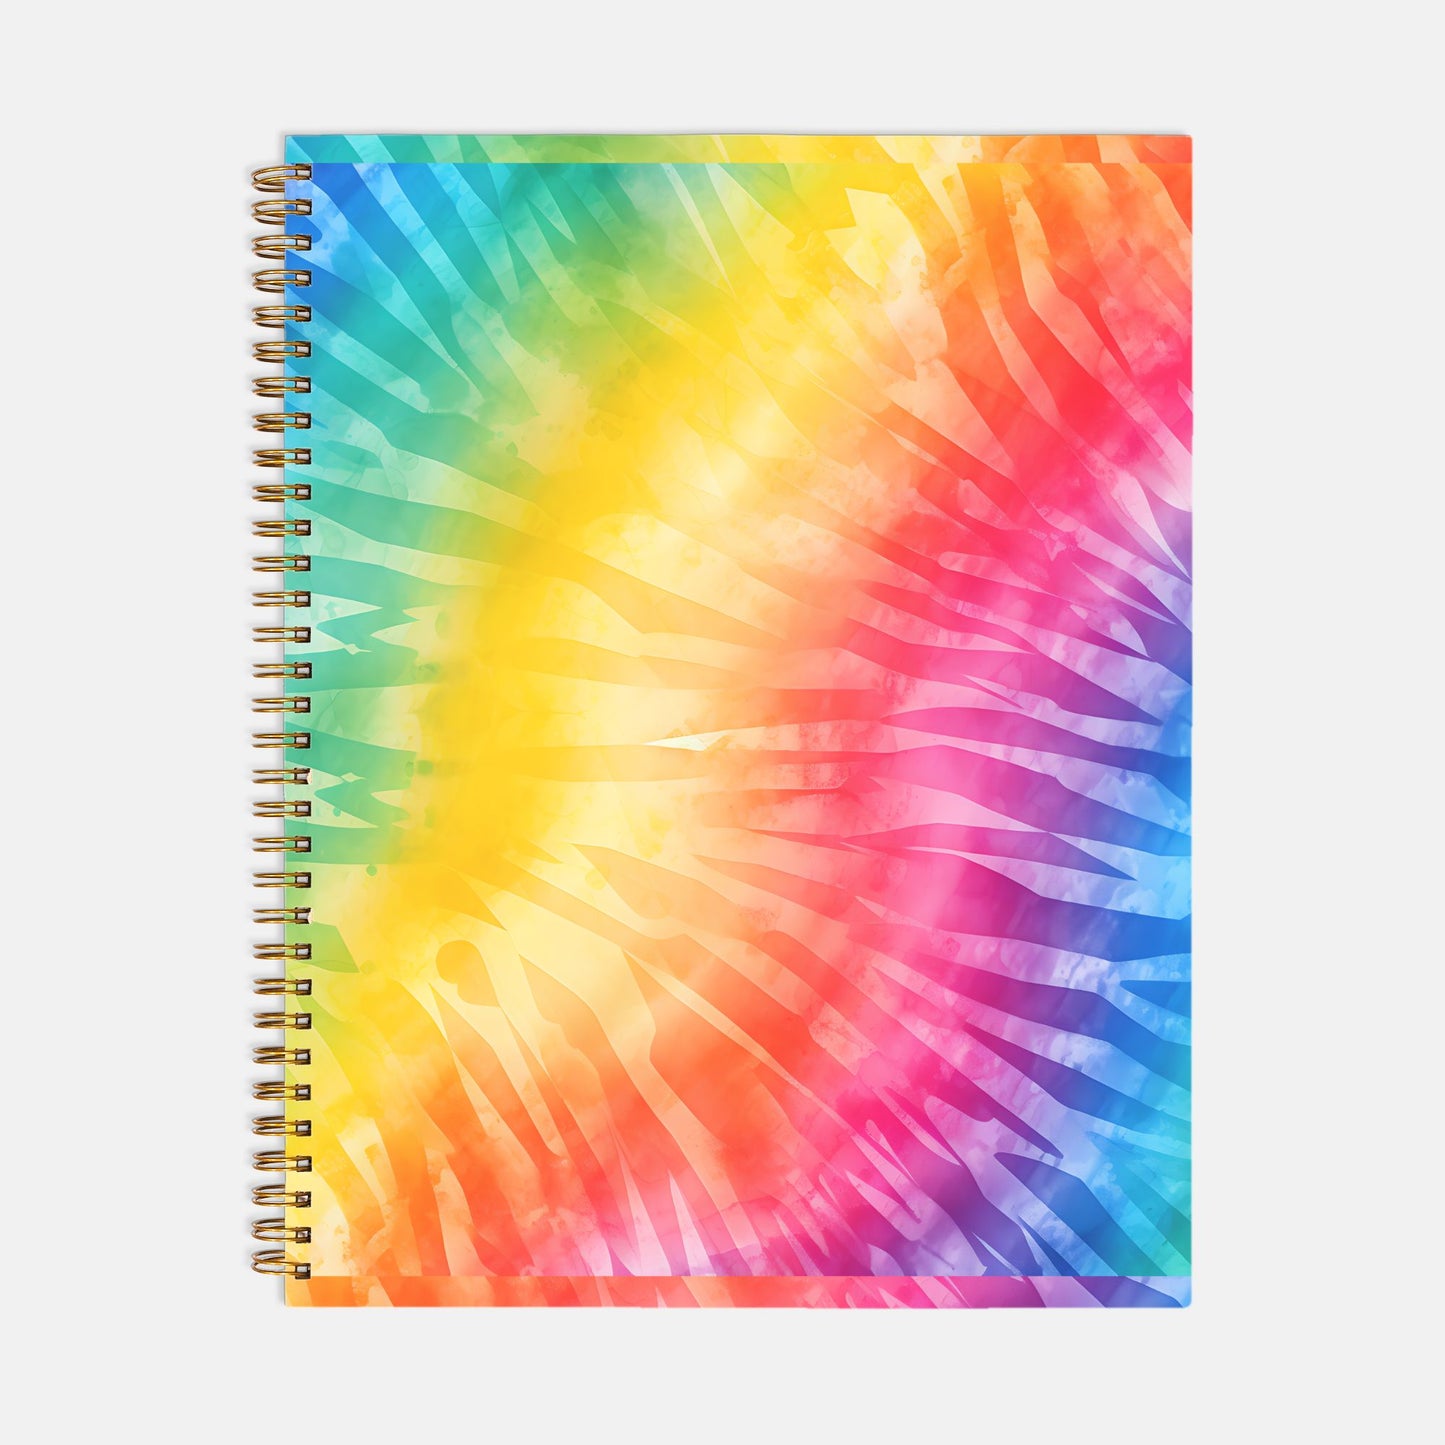 Planner Hardcover Spiral 8.5 x 11 - Rainbow Tie Dye